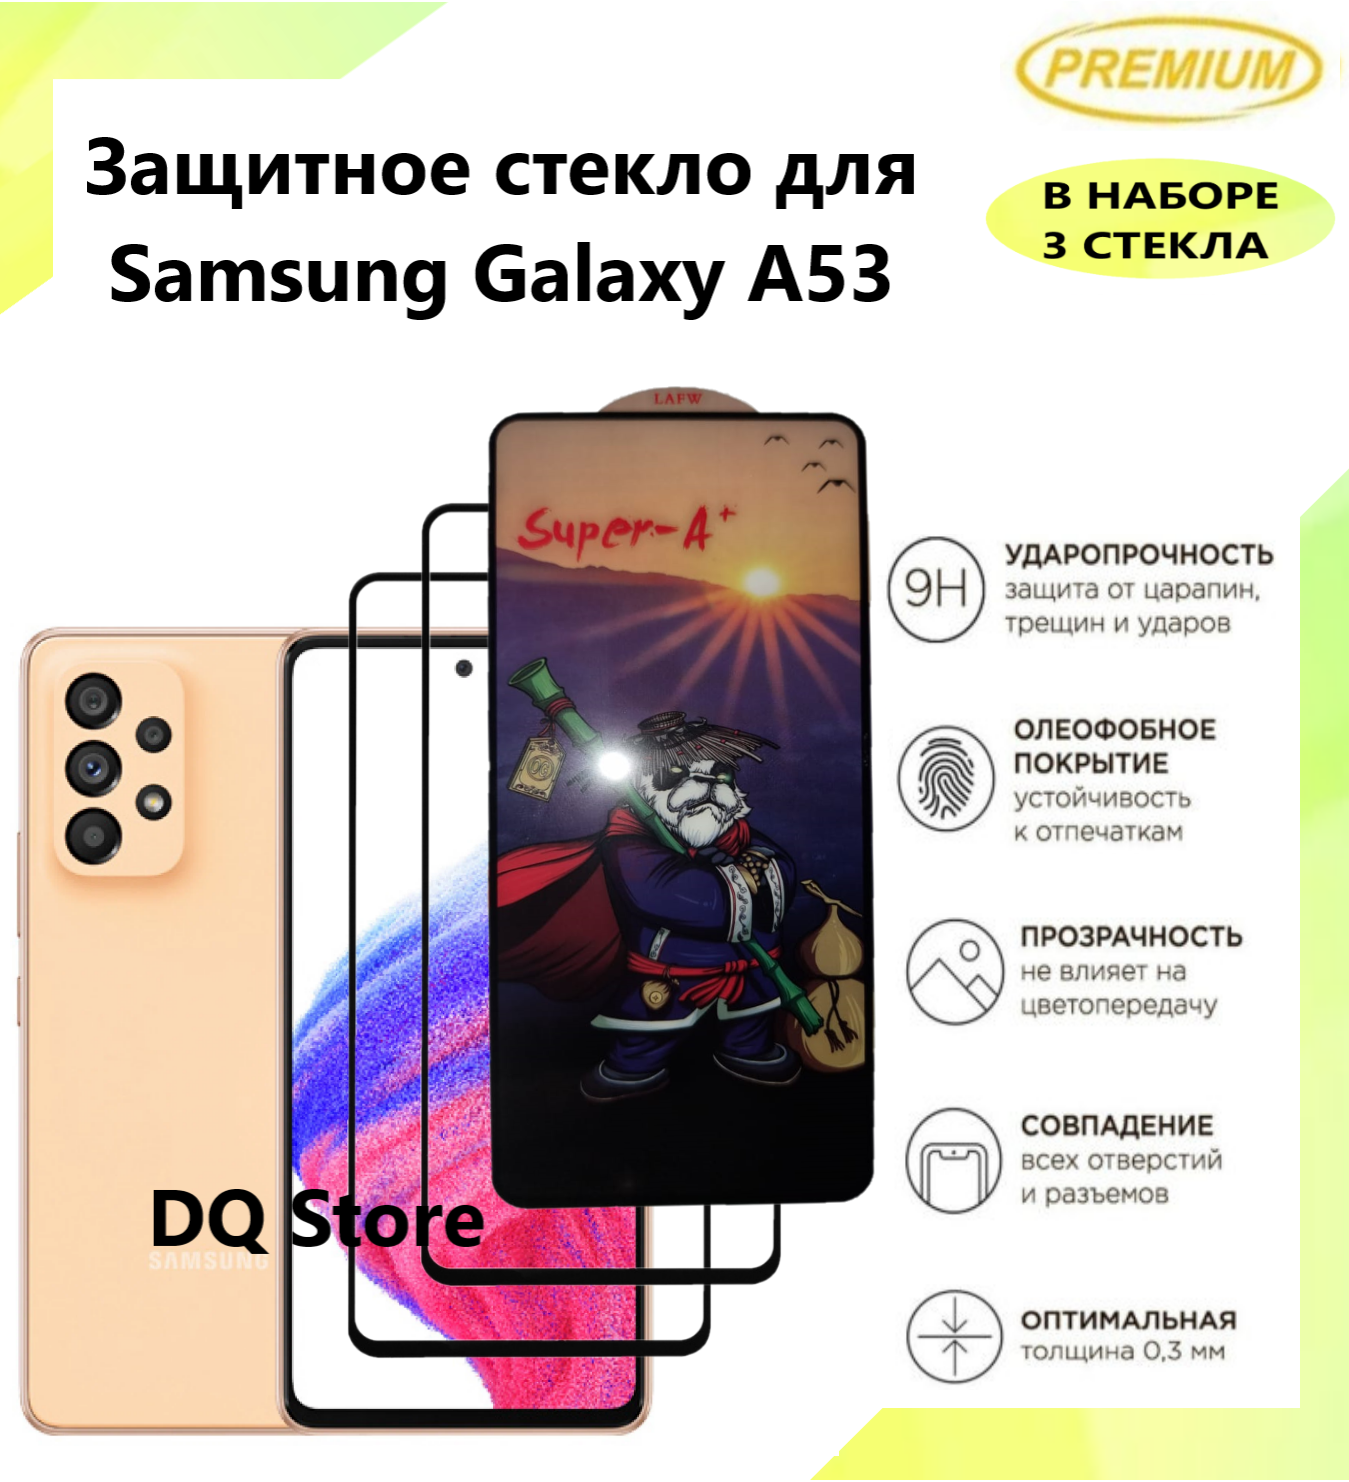 Защитное стекло на Samsung Galaxy A53 5G . Полноэкранное защитное стекло с олеофобным покрытием